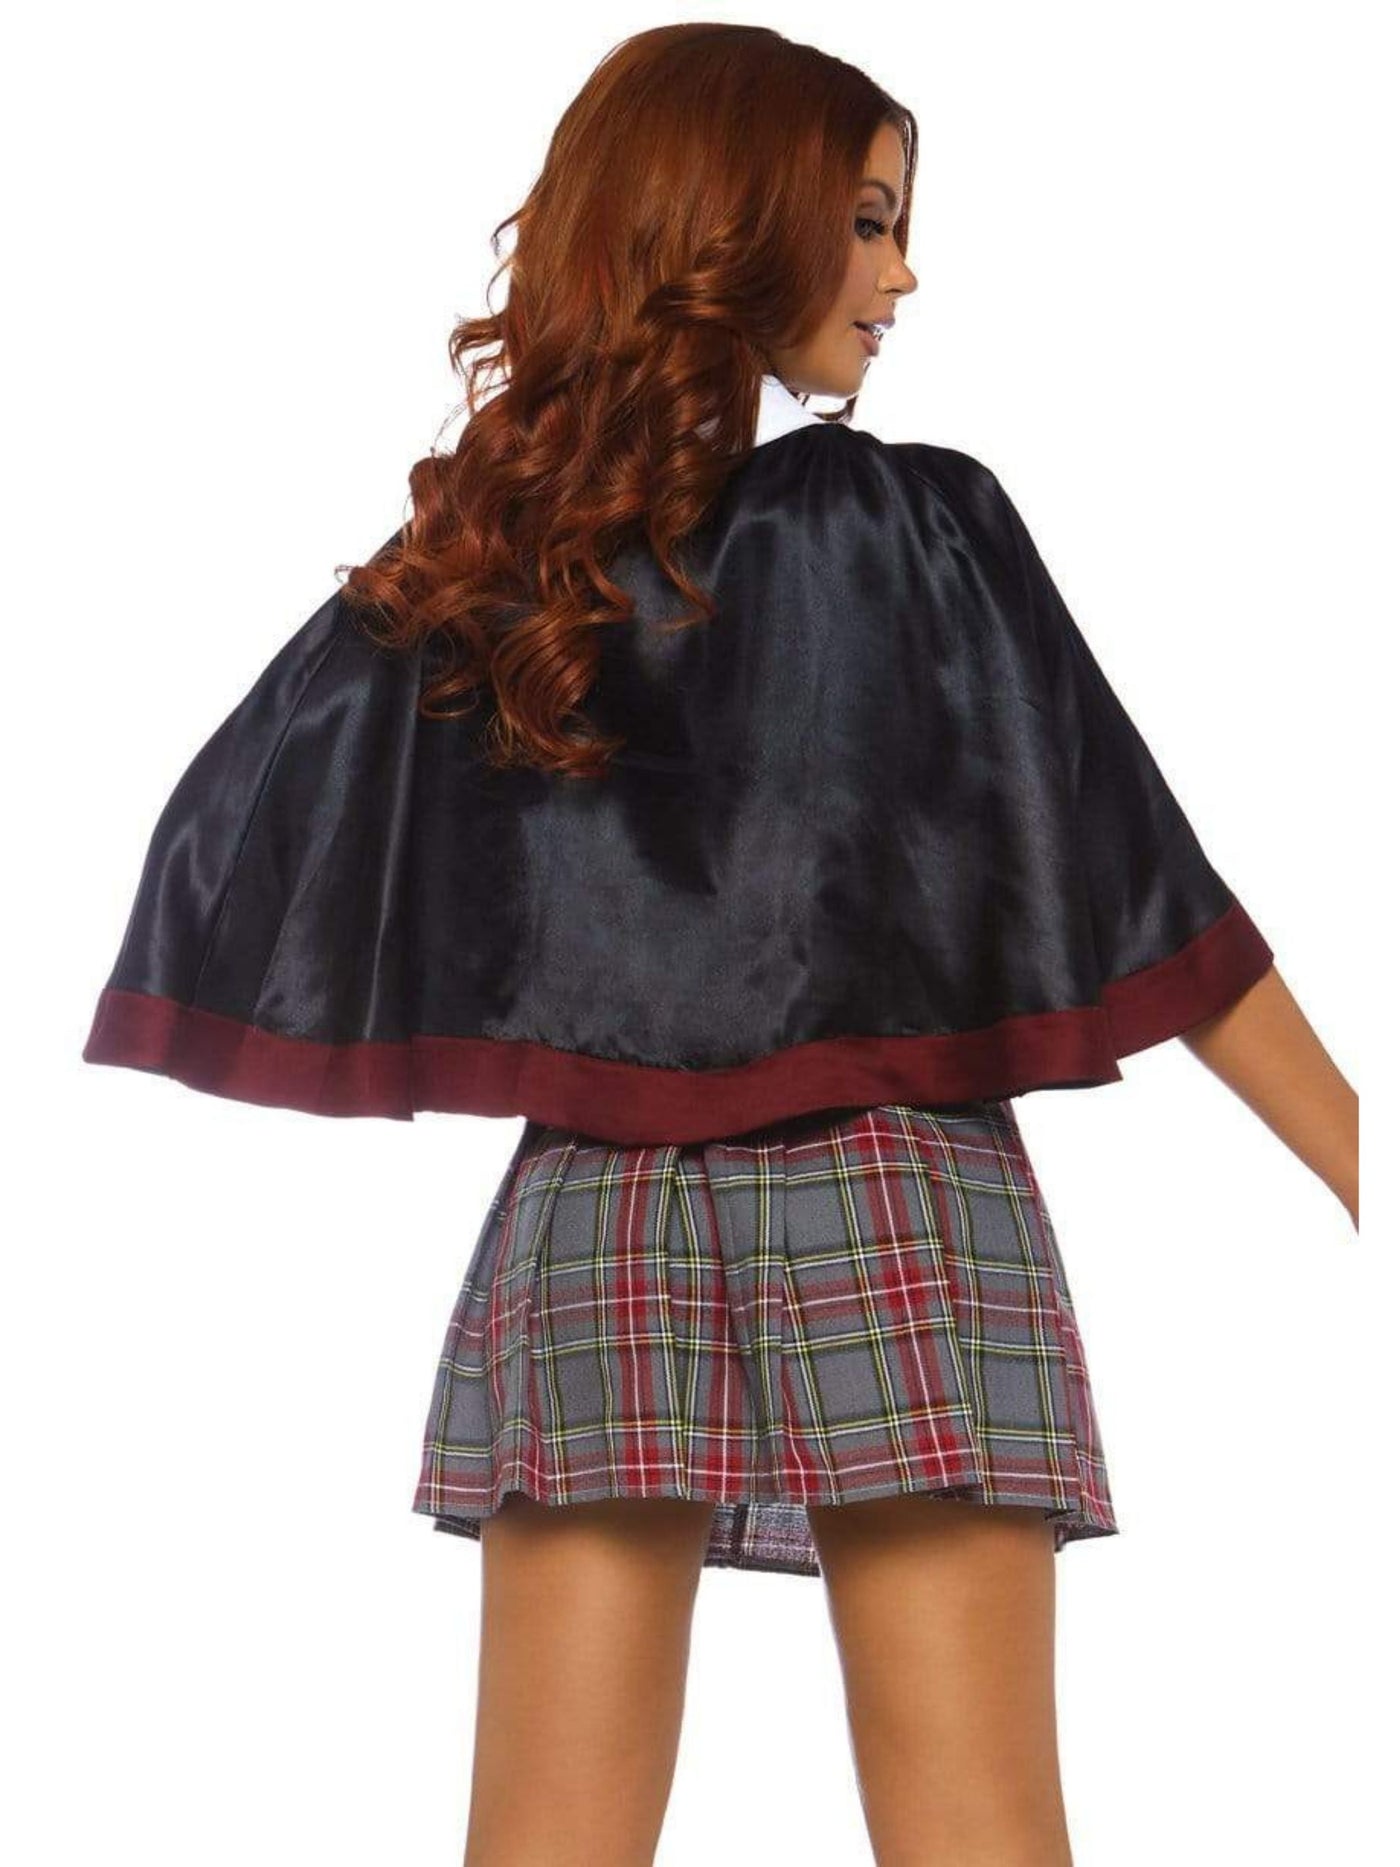 Spellbinding Schoolgirl Sexy Gryffindor Women's School Uniform Costume